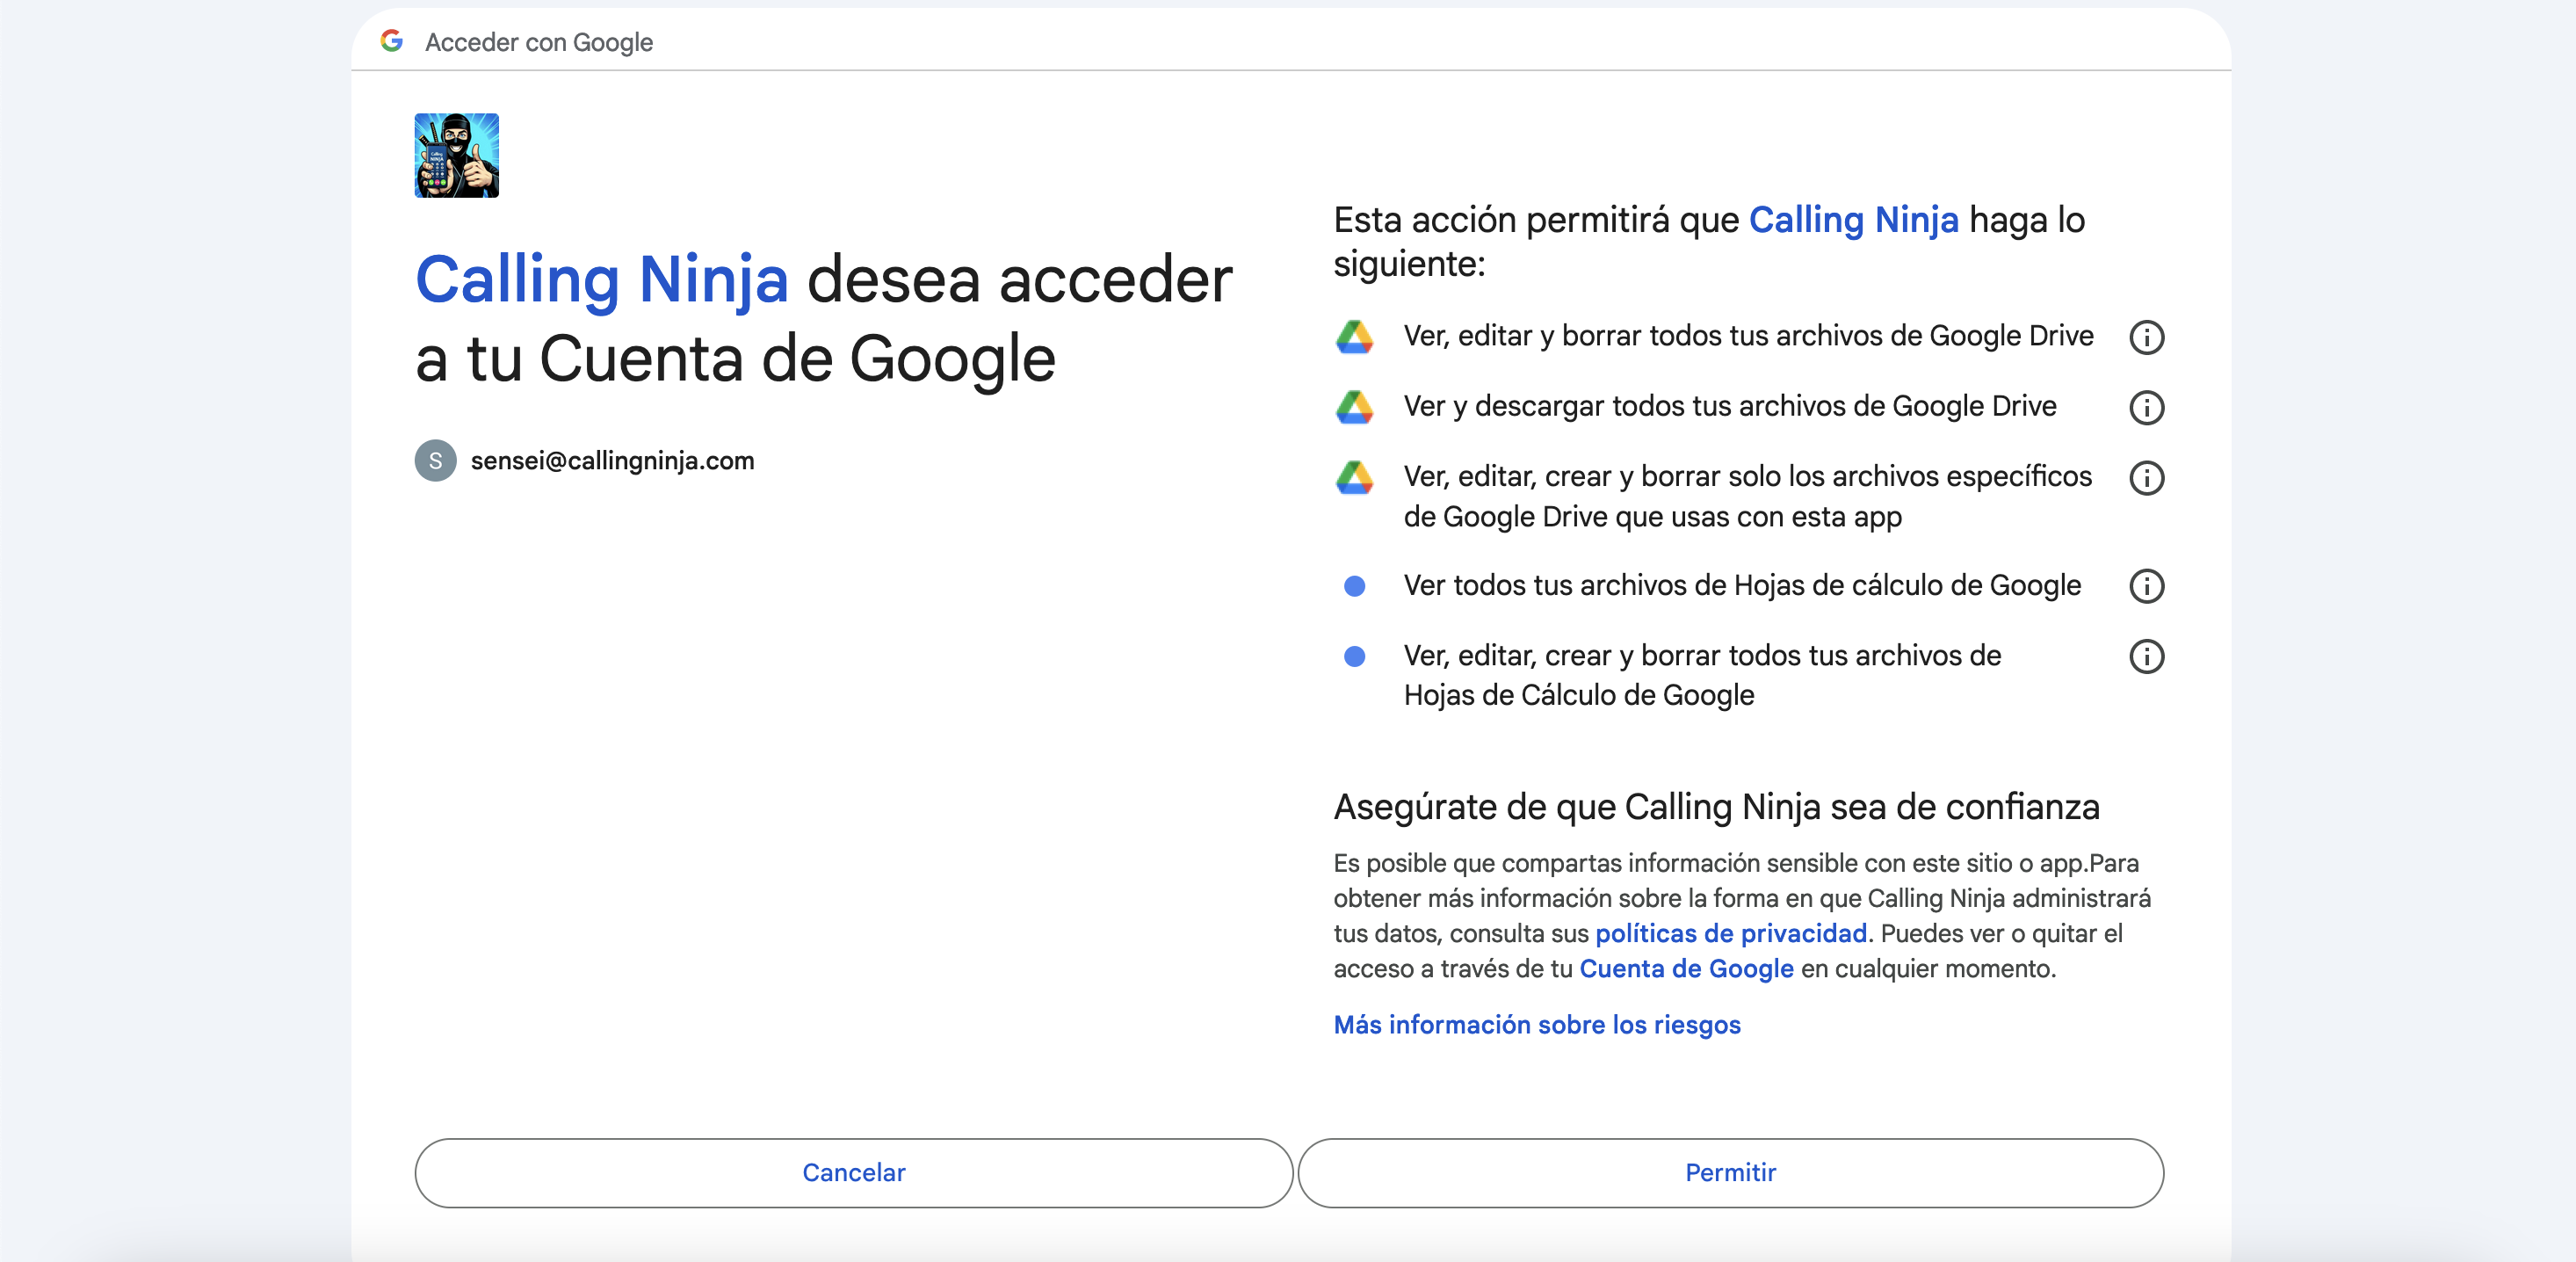 Calling Ninja necesita estos accesos para poder trabajar en tu nombre